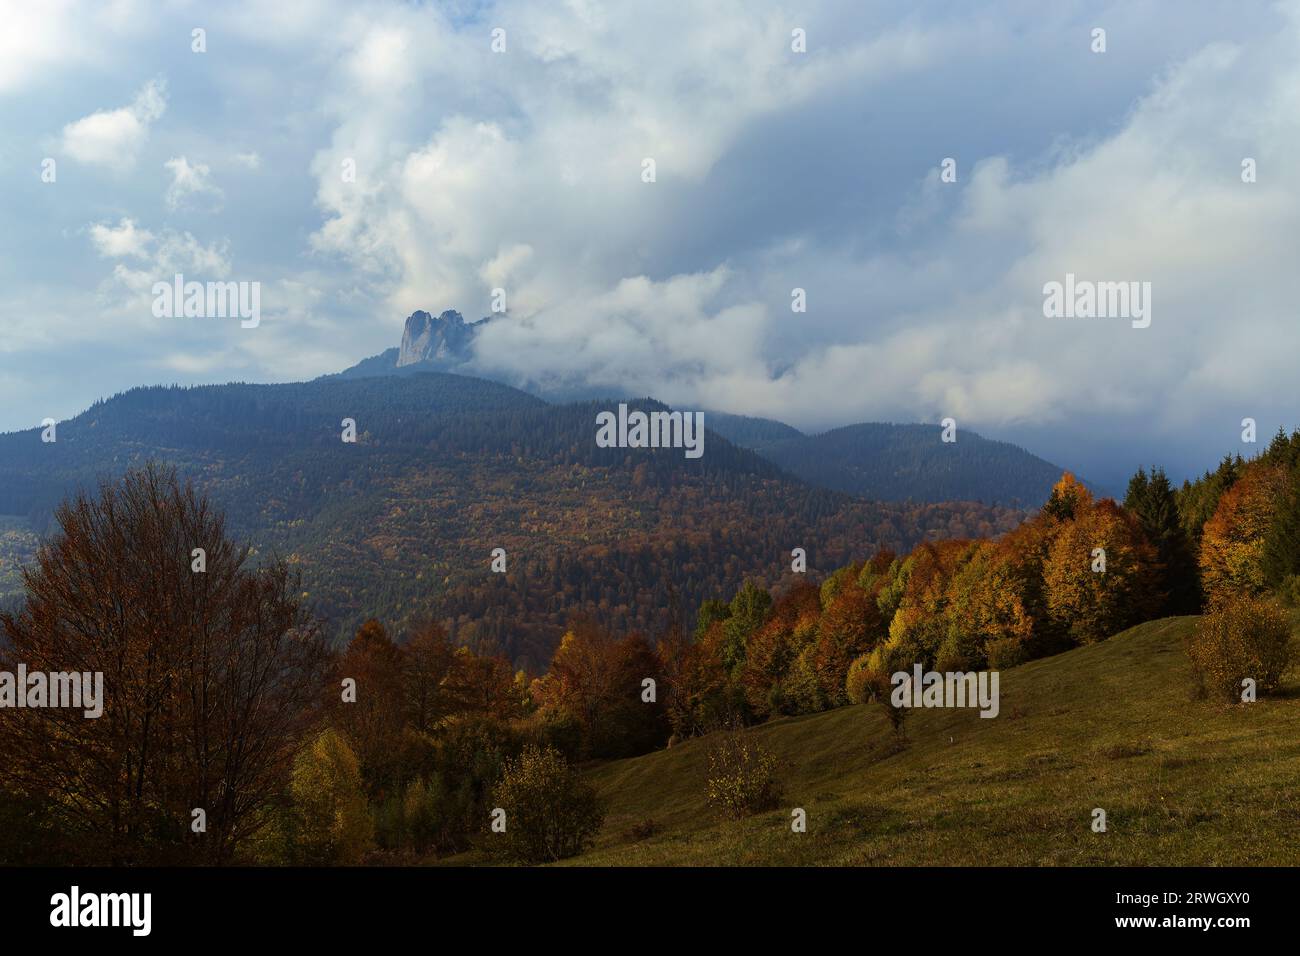 Der Ceahlau Mountain im rumänischen Neamt hat von weitem beobachtet, da er vor dem Regen von Wolken bedeckt war, an einem wunderschönen Oktobertag. Stockfoto